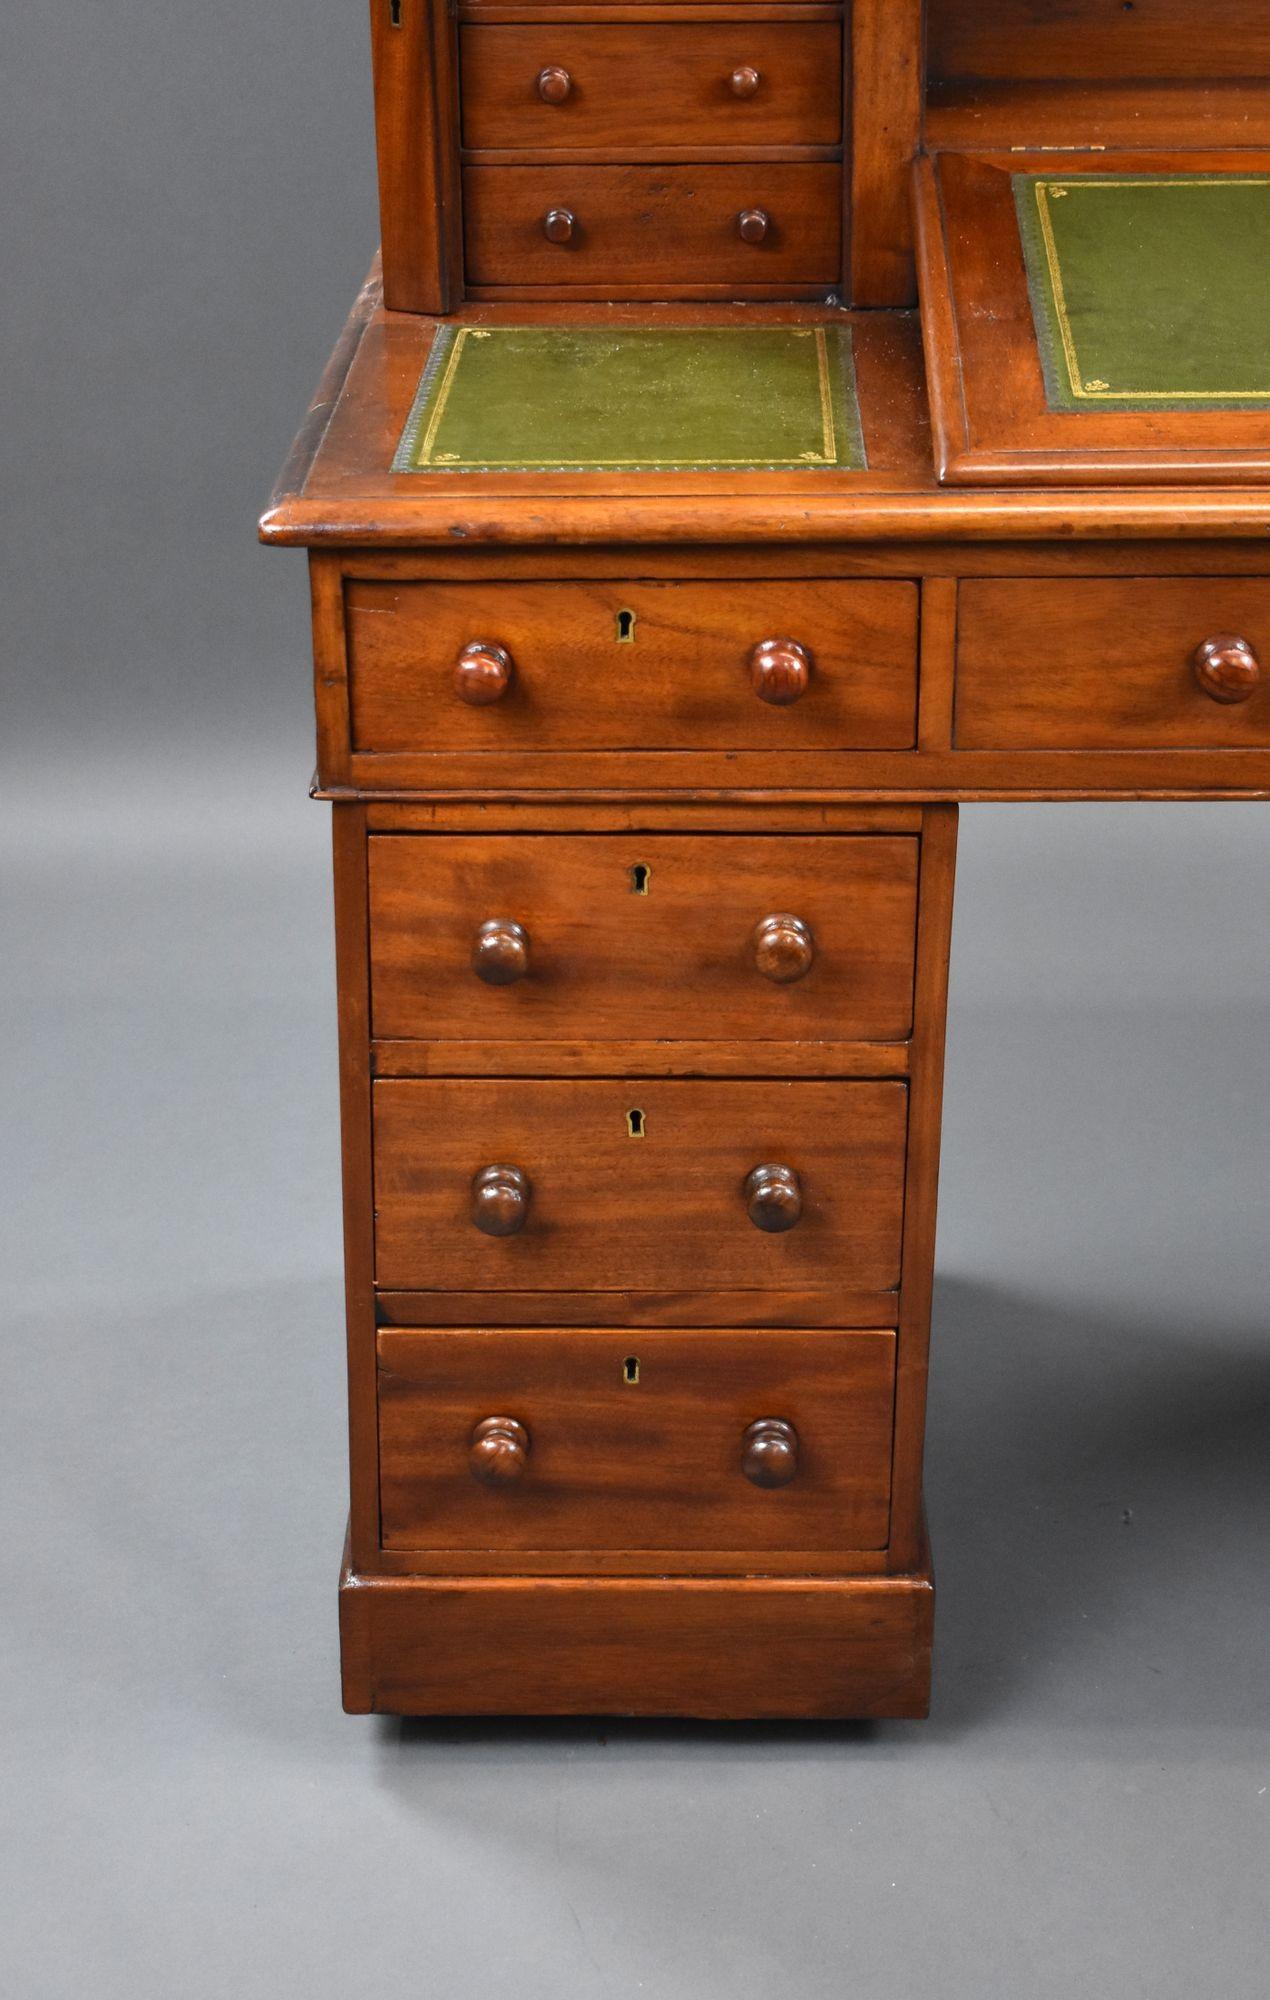 Zum Verkauf steht ein viktorianischer Dickens-Schreibtisch aus Mahagoni mit vier Schubladen auf jeder Seite der Platte, verschlossen mit einem seitlichen Schließfach, mit drei grünen Ledereinsätzen und einem aufsteigenden Fall in der Mitte, über